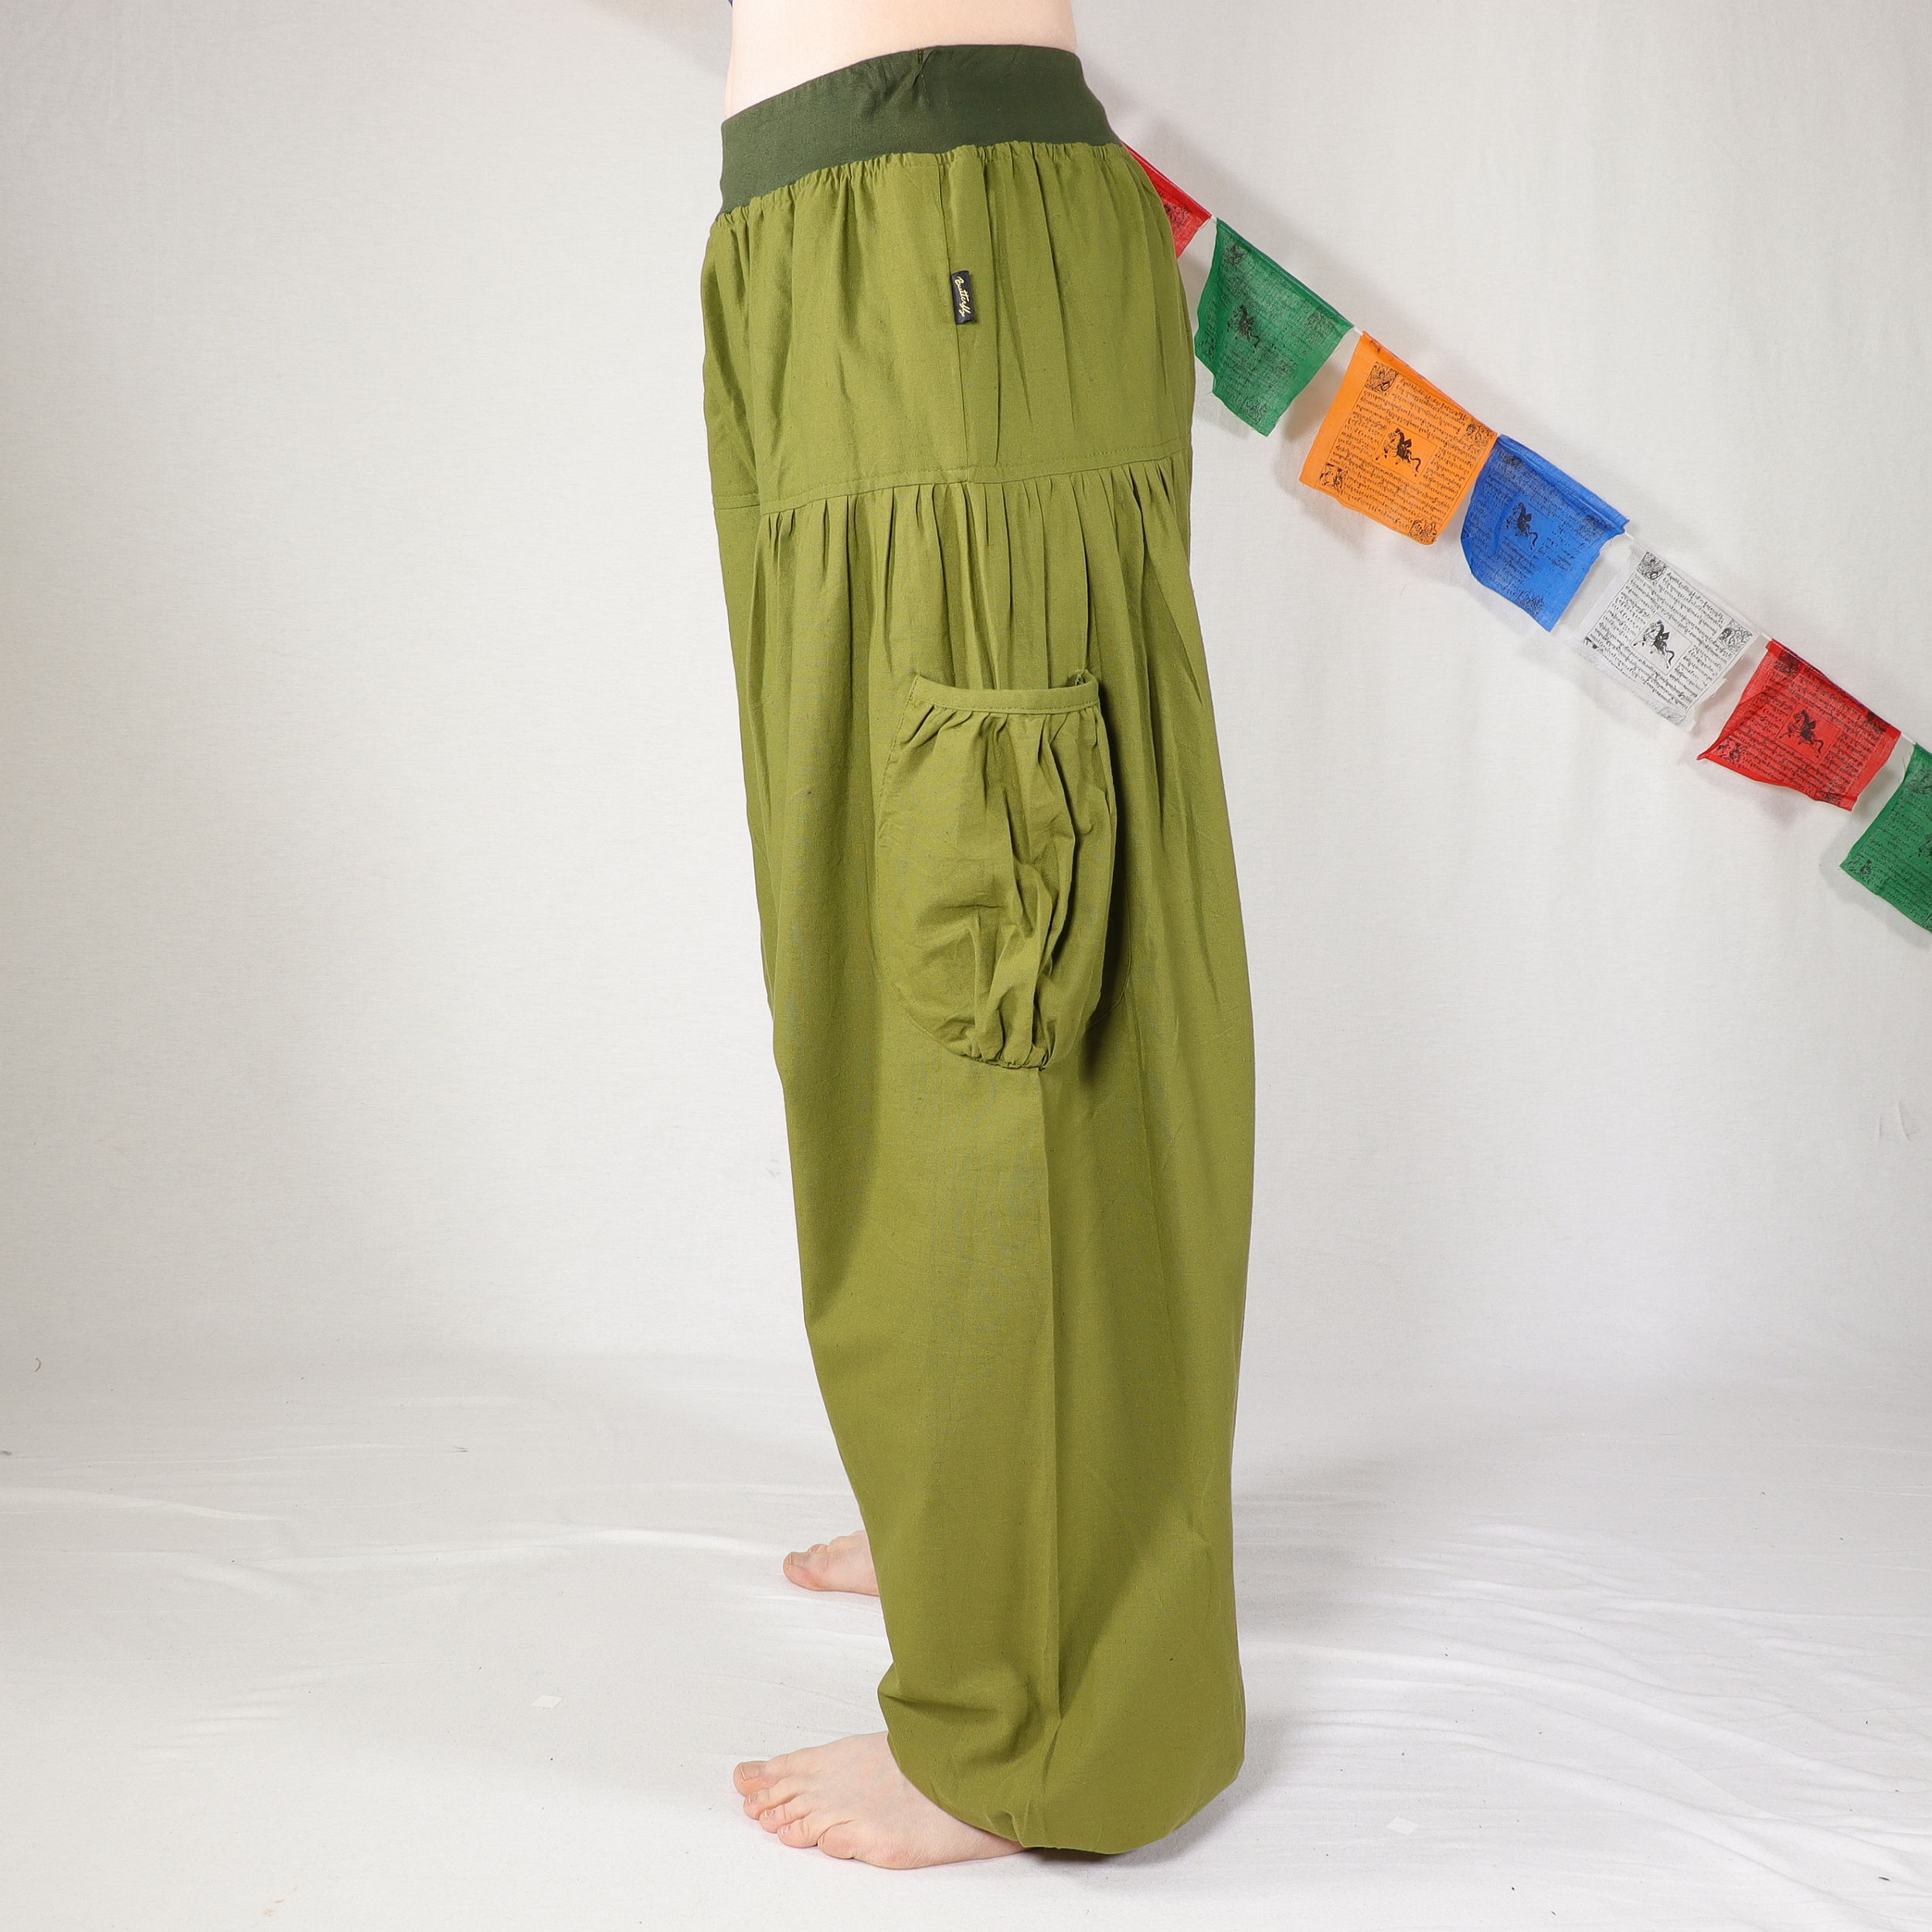 Haremshose - Pockets - OliveGrün - 100% Baumwolle - Deine neue Lieblingshose für Yoga und mehr - Fair gehandelt aus Nepal